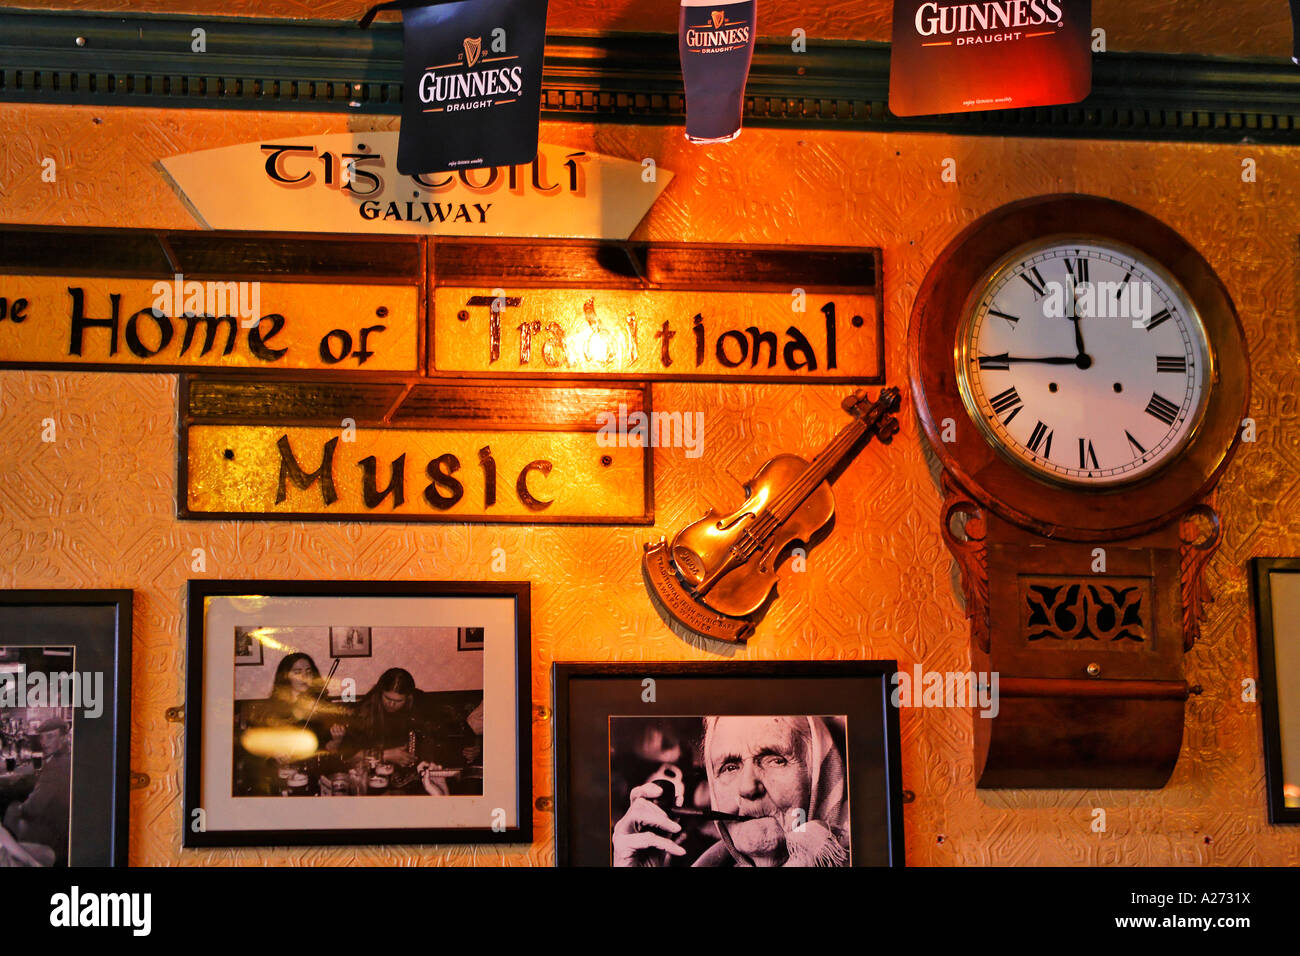 Sesiones de música en vivo son una parte fija en el pub irlandés cultura, Galway, Galway, Irlanda Foto de stock